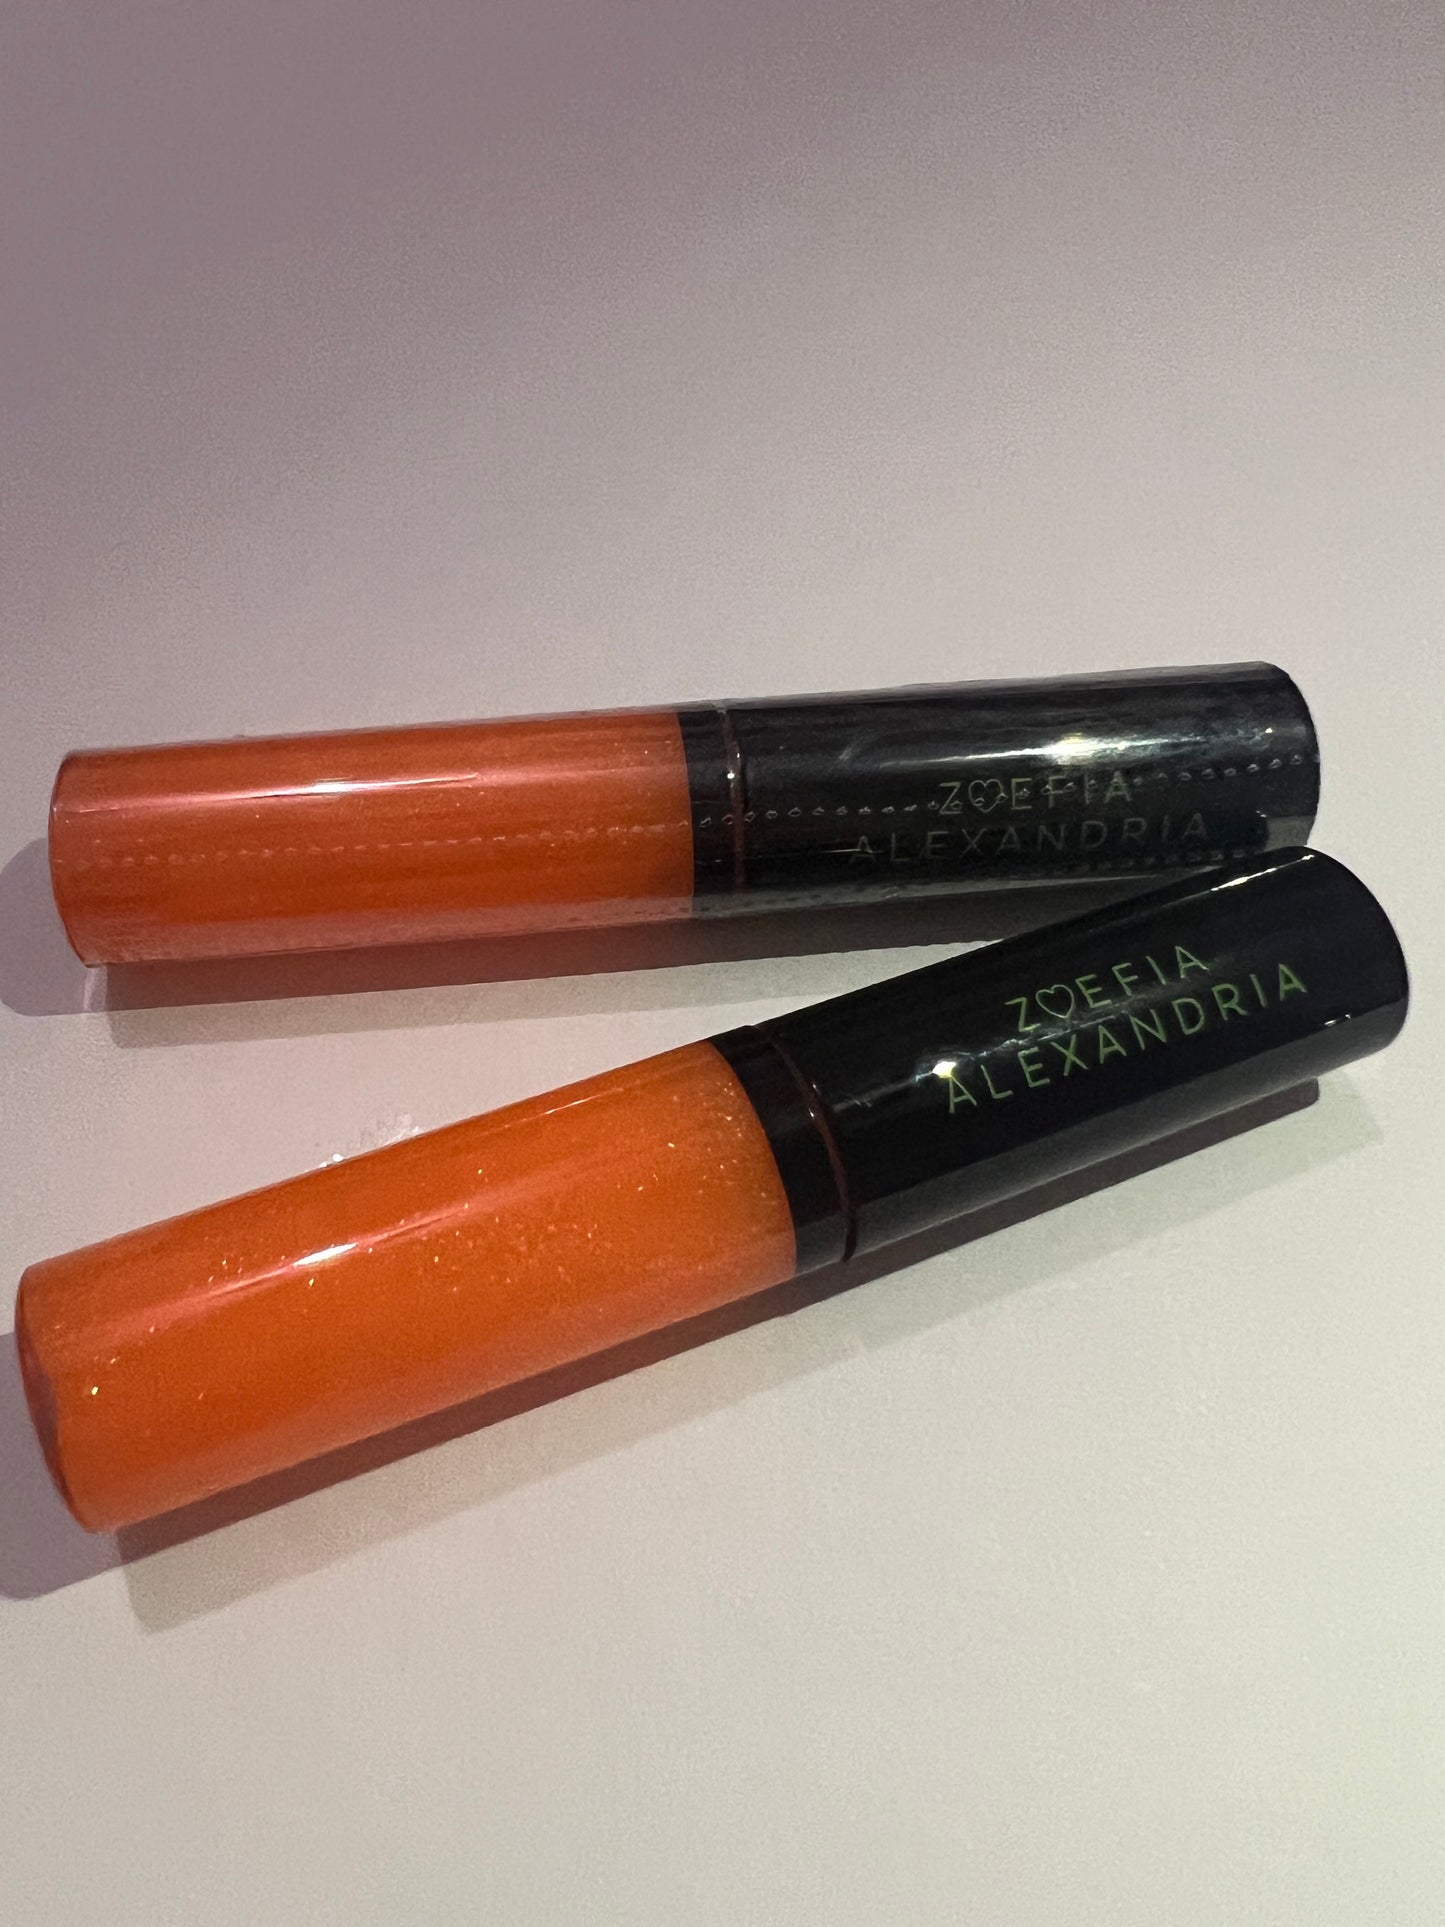 Flavored Sheer Lip Gloss - Tangerine